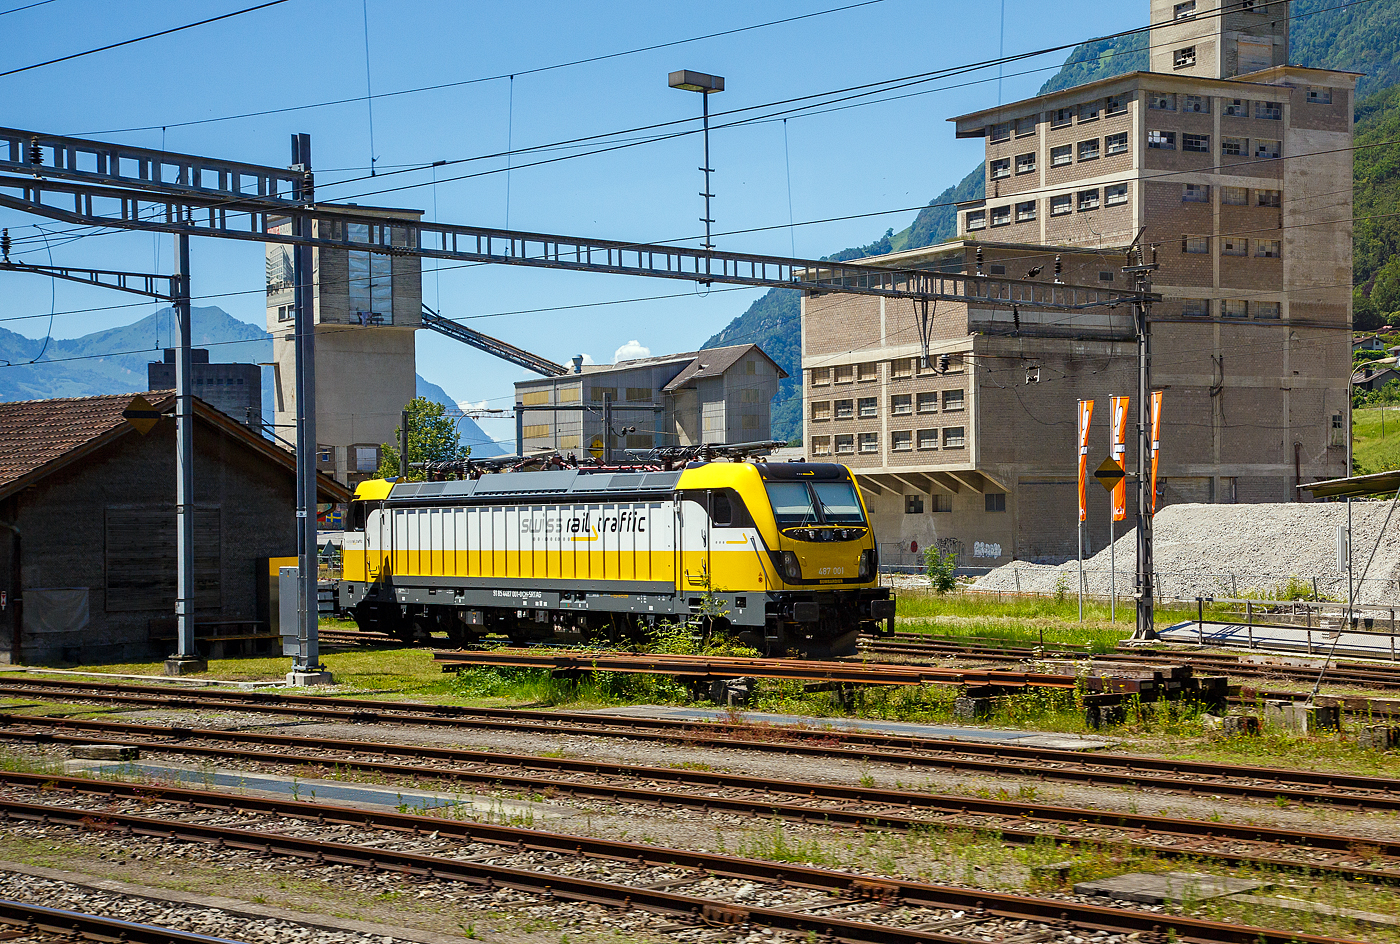 Die Rem 487 001 (91 85 4487 001-0 CH-SRTAG) der Swiss Rail Traffic AG, ist am 23 Juni 2016 bei Brunnen (Schweiz) angestellt. 

Die Bombardier TRAXX F160 AC3 LM wurde 2014 von Bombardier in Kassel unter der Fabriknummer 35113 gebaut. 

Im September 2014 bestellte Swiss Rail Traffic (SRT) eine Lokomotive (DACH-Zulassung, mit LM-Modul); ausgeliefert wurde Anfang 2015 die vormalige Vorführlokomotive 187 010 als Rem 487 001. Ende 2018 verkaufte die SRT die Lokomotive an die Salzburger Eisenbahn Transportlogistik (SETG), weil die Auslastung zu gering gewesen sei. 

Zitat SRT: „Die Rem 487 001 als vierachsige, elektrische Lok mit Dieselaggregat für die letzte Meile ist eine Güterzugslok, welche bei entsprechenden Verkehren und insbesondere bei einer Güterbahn eine sehr gute Option im Traktionsbereich darstellt. Die SRT hatte mit den Verkehren im Zusammenhang mit der Sondermülldeponie Kölliken (SMDK) sowie den Zuckerrübentransporten die entsprechenden Einsatzmöglichkeiten. Die Tatsache, dass die SRT auf Spezialverkehre ausgerichtet ist, hätte für die Zukunft jedoch zu einer nicht konsistenten Situation geführt. Daher entschied sich die SRT, die Lok einer besseren Verwendung zuzuführen und verkaufte dieselbe an die Salzburger Eisenbahn Transportlogistik GmbH (SETG).“ So fährt die Lok seit 2019 als 91 85 4487 001-0 CH-SRA für die SETG - Salzbuger Eisenbahn TransportLogistik GmbH (Salzburg).

Zudem gab die SRT im Jan. 2019 bekannt, das man sich, trotz erfolgreich gefahrener Kampagne, aus den Rübenverkehren zurückzieht.

Wie die Vorgängerinnen AC1 und AC2 ist die AC3 für den Betrieb unter 15 Kilovolt bei 16,7 Hertz, sowie unter 25 Kilovolt bei 50 Hertz Wechselstrom ausgelegt, und verfügt unverändert über eine Dauerleistung von 5.600 kW ( Power Boost  von 6.000 kW) und eine Anfahrzugkraft von 300 kN. Von den Traxx 2E übernommen wurde der Maschinenraum mit Seitengang um das sogenannte Powerpack, bestehend aus Stromrichter und Hochspannungsgerüst, womit erstmals alle Varianten dasselbe Layout verwenden.

Neu ist die Kopfform der Traxx-3-Lokomotiven, im Wesentlichen ein auf dem Lokkasten aufgesetztes GFK-Modul. Zudem wurden die Lokomotiven erstmals ab Werk konstruktiv für den Einbau der Zugbeeinflussung ETCS vorbereitet. Neuerungen betreffen die verfügbaren Drehgestelle: zu den bisherigen Varianten „F140“ mit Tatzlagerantrieb und Zulassung für maximal 140 km/h, und „P160“ mit Hohlwellenantrieb und Zulassung für maximal 160 km/h, werden die Traxx-3-Lokomotiven offiziell auch als Variante „F160“ mit Tatzlagerantrieb und Zulassung für maximal 160 km/h angeboten. Es gibt sie also als TRAXX F140 AC3 und als TRAXX F160 AC3.

Gänzlich neu sind die optional verfügbaren Last-Mile-Module, die es als Last-Mile-Diesel (LMD) mit zusätzlicher Last-Mile-Battery (LMB) gibt. Das LMD besteht aus einem Dieselhilfsmotor und einem Kraftstofftank, um auch nicht-elektrifizierte Streckenabschnitte und Anschlussgleise befahren zu können. Der Dieselmotor von Deutz verfügt über einen Hubraum von 7.150 cm³, erbringt eine Leistung von 230 kW (180 kW am Rad), mit Batterieunterstützung 290 kW und erfüllt die Stage-IIIB-Abgasnorm. Im Dieselbetrieb werden alle vier Fahrmotoren betrieben, die Anfahrzugkraft beträgt dabei mit Batterieunterstützung unverändert 300 kN, ohne Batterie 260 kN. Ohne Anhängelast ist damit eine Höchstgeschwindigkeit von 60 km/h möglich, bei 2000 Tonnen Last noch 40 km/h. Der Tankinhalt von 400 Litern reicht für bis zu acht Stunden Dieselbetrieb, kurze Strecken können auch ausschließlich mit der eingebauten Batterie zurückgelegt werden. Der Übergang vom elektrischen zum Dieselbetrieb kann während der Fahrt erfolgen. Für den Rangierbetrieb ist zudem eine Funkfernsteuerung erhältlich.

Erstmals wurde der Lokkasten nicht mit glatten Seitenwänden gefertigt, sondern konstruktiv deutlich günstiger, sind die Seitenwände der AC3 vertikal gesickt und die Seitenflächen erhielten sogenannte Flex-Panels, eine Vorrichtung zum Einspannen von Planen. Diese würden die Sicken verdecken, und wären kostengünstiger als Umlackierungen oder Umbeklebungen. Die Nutzung der Flex-Panels wurde jedoch in der Schweiz umgehend untersagt.

TECHNISHE DATEN:
Hersteller: 	Bombardier Transportation
Spurweite: 	1.435 mm (Normalspur)
Achsanordnung: Bo’ Bo’
Länge über Puffer: 18.900 mm
Drehzapfenabstand: 10.440 mm
Achsabstand im Drehgestell: 2.600 mm
Treibraddurchmesser: 	1.250 mm (neu) / 1.170 mm (abgenutzt)
Höhe:  4.283 mm
Breite:  2.977 mm
Lichtraumprofil: UIC 505-1
Dienstgewicht: 87 t
Fahrmotoren: 4 Asynchronmotoren
Bremse: Elektrische Bremse (SW-GPR-E mZ)

Daten im Oberleitungsbetrieb:
Höchstgeschwindigkeit: 160 km/h
Dauerleistung: 5.600 kW 
Kurzzeitleistung  Power Boost : 6.000 kW
Anfahrzugkraft: 300 kN
Dauerzugkraft: 252 kN bei 80 km/h
Stromsystem: 15 kV 16,7 Hz~ und 25 kV 50 Hz~

Daten im Dieselbetrieb (Last-Mile):
Motorbauart: Sechszylinder-Reihendieselmotor
Motorentyp: Deutz TCD 2013 L6 4V
Nenndrehzahl: 1.800 U/min
Höchstgeschwindigkeit: 60 km/h
Dauerleistung: 230 kW
Leistung am Rad: 180 kW
Tankinhalt:  400 l
